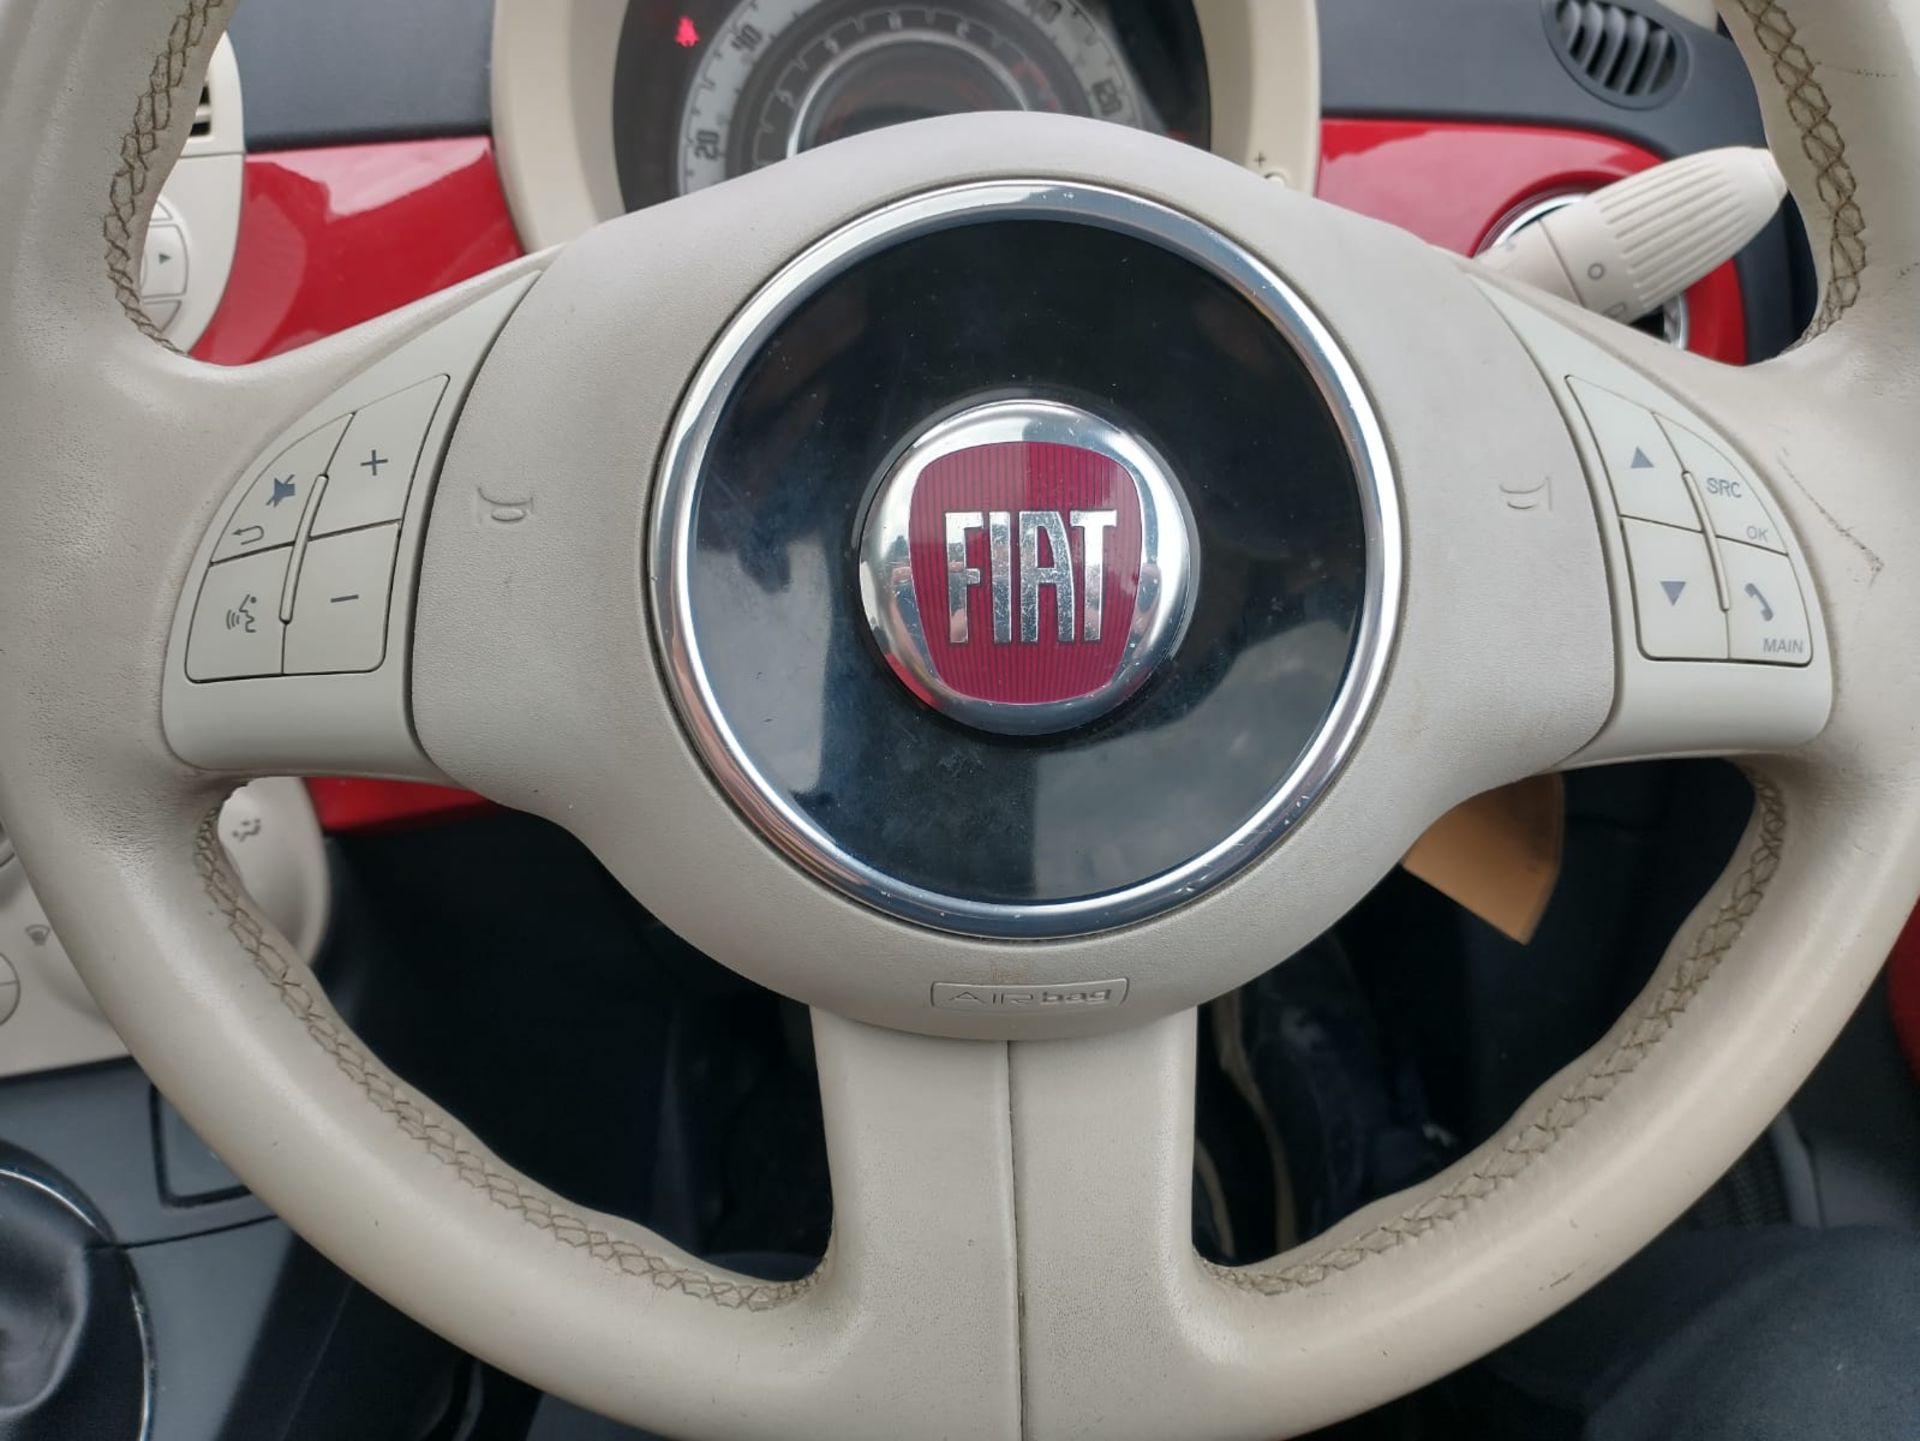 2013 Fiat 500 1.2 3Dr hatchback - Image 6 of 13